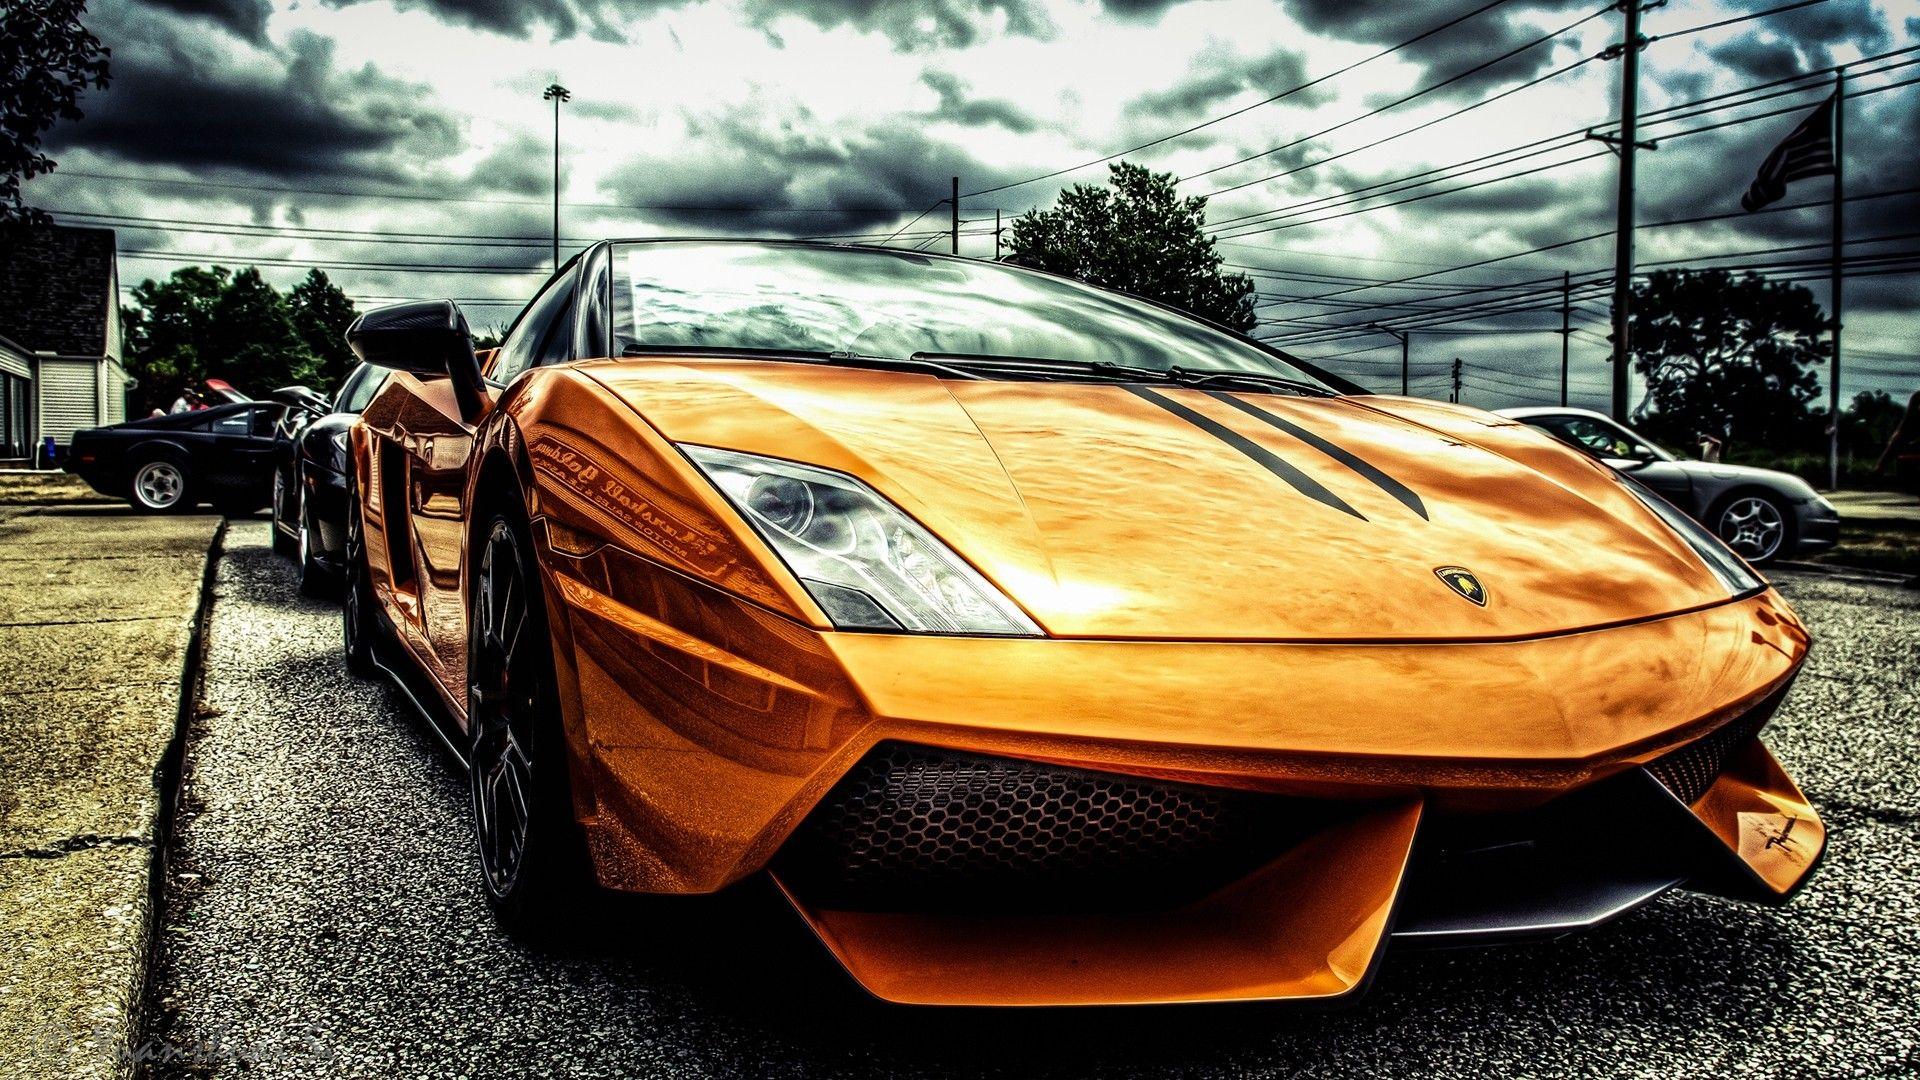 Gold Lamborghini HD Wallpaperx1080